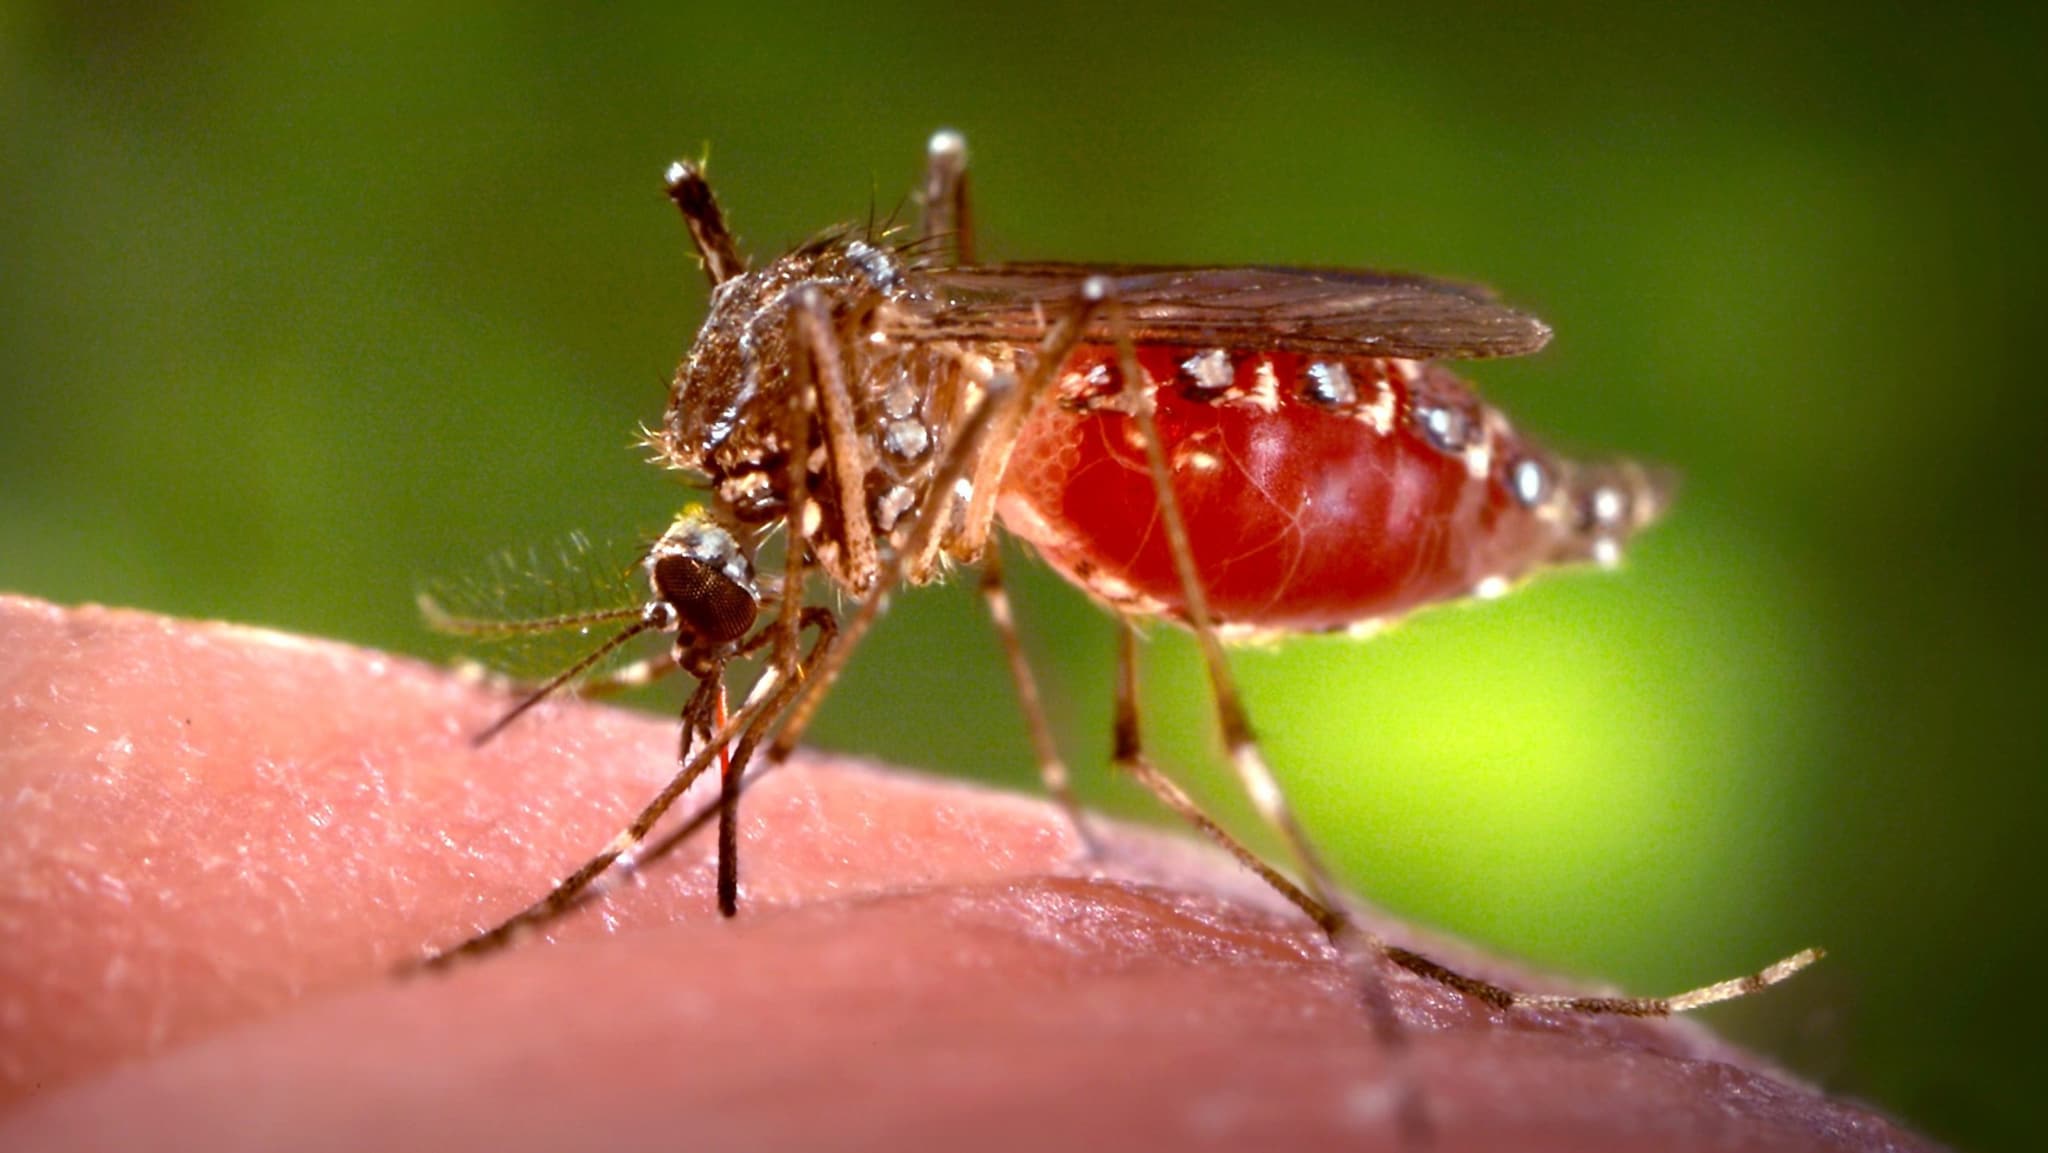 Aedes aegypti mosquito on skin.